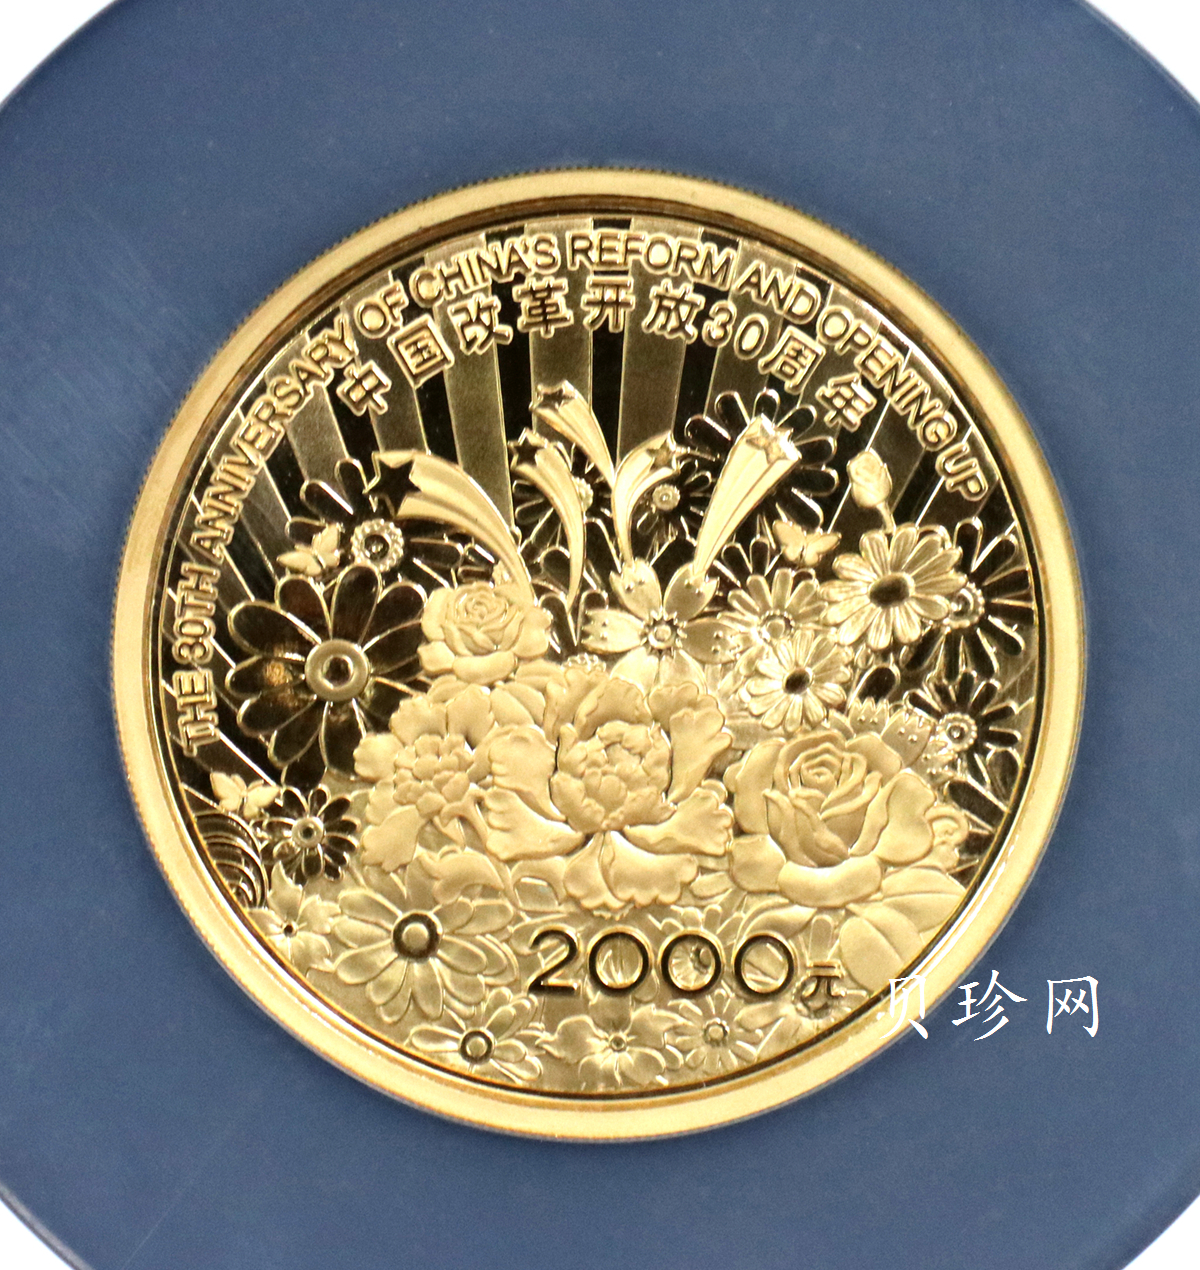 【080903】2008年改革开放30周年5盎司精制金币